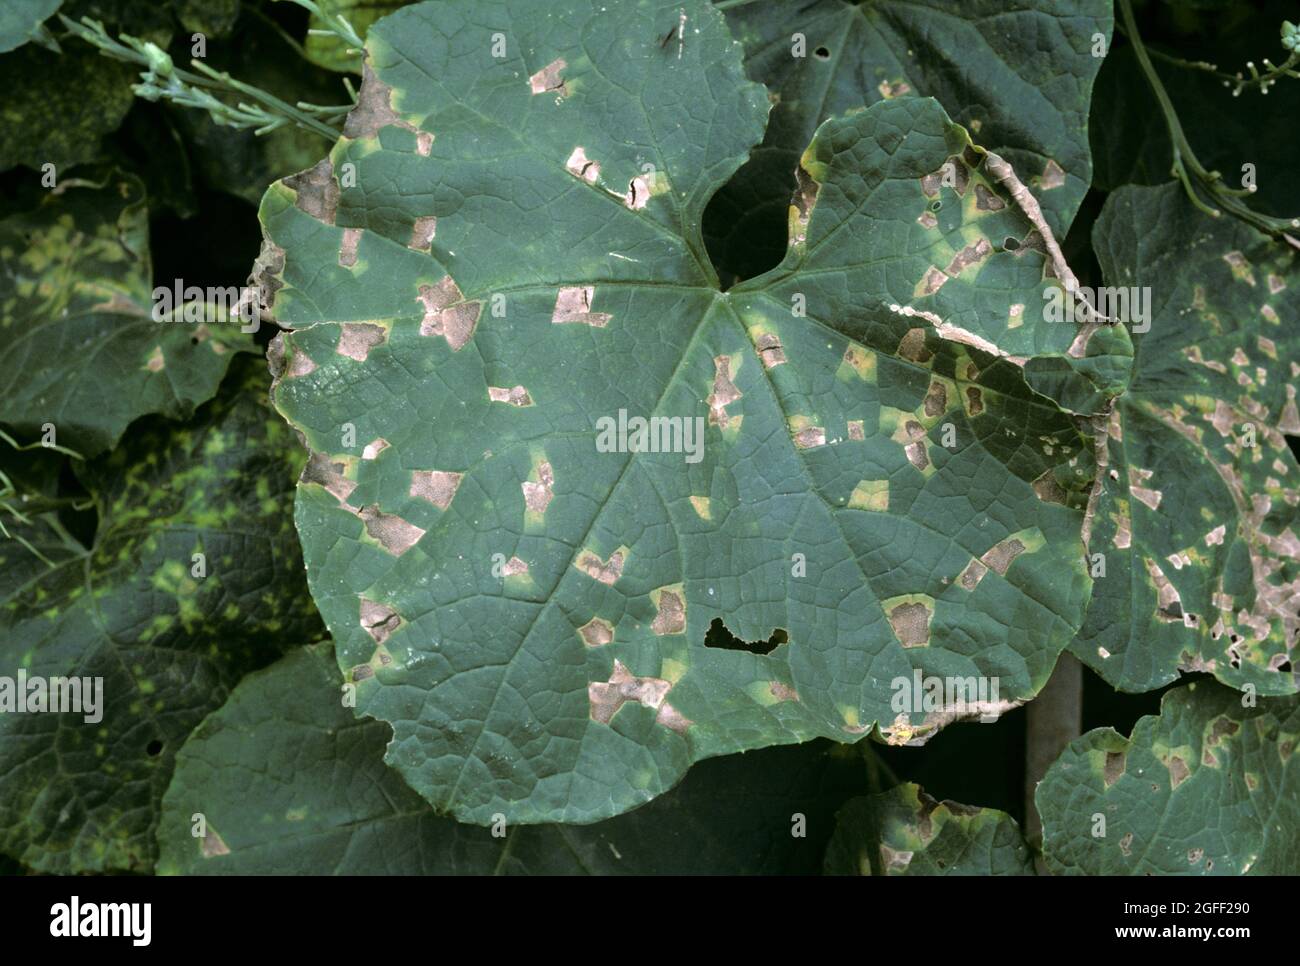 Cucurbit angulaire tache foliaire (Pseudomonas syringae pv lacrymans) lésions d'une maladie bactérienne de la courge, Thaïlande Banque D'Images